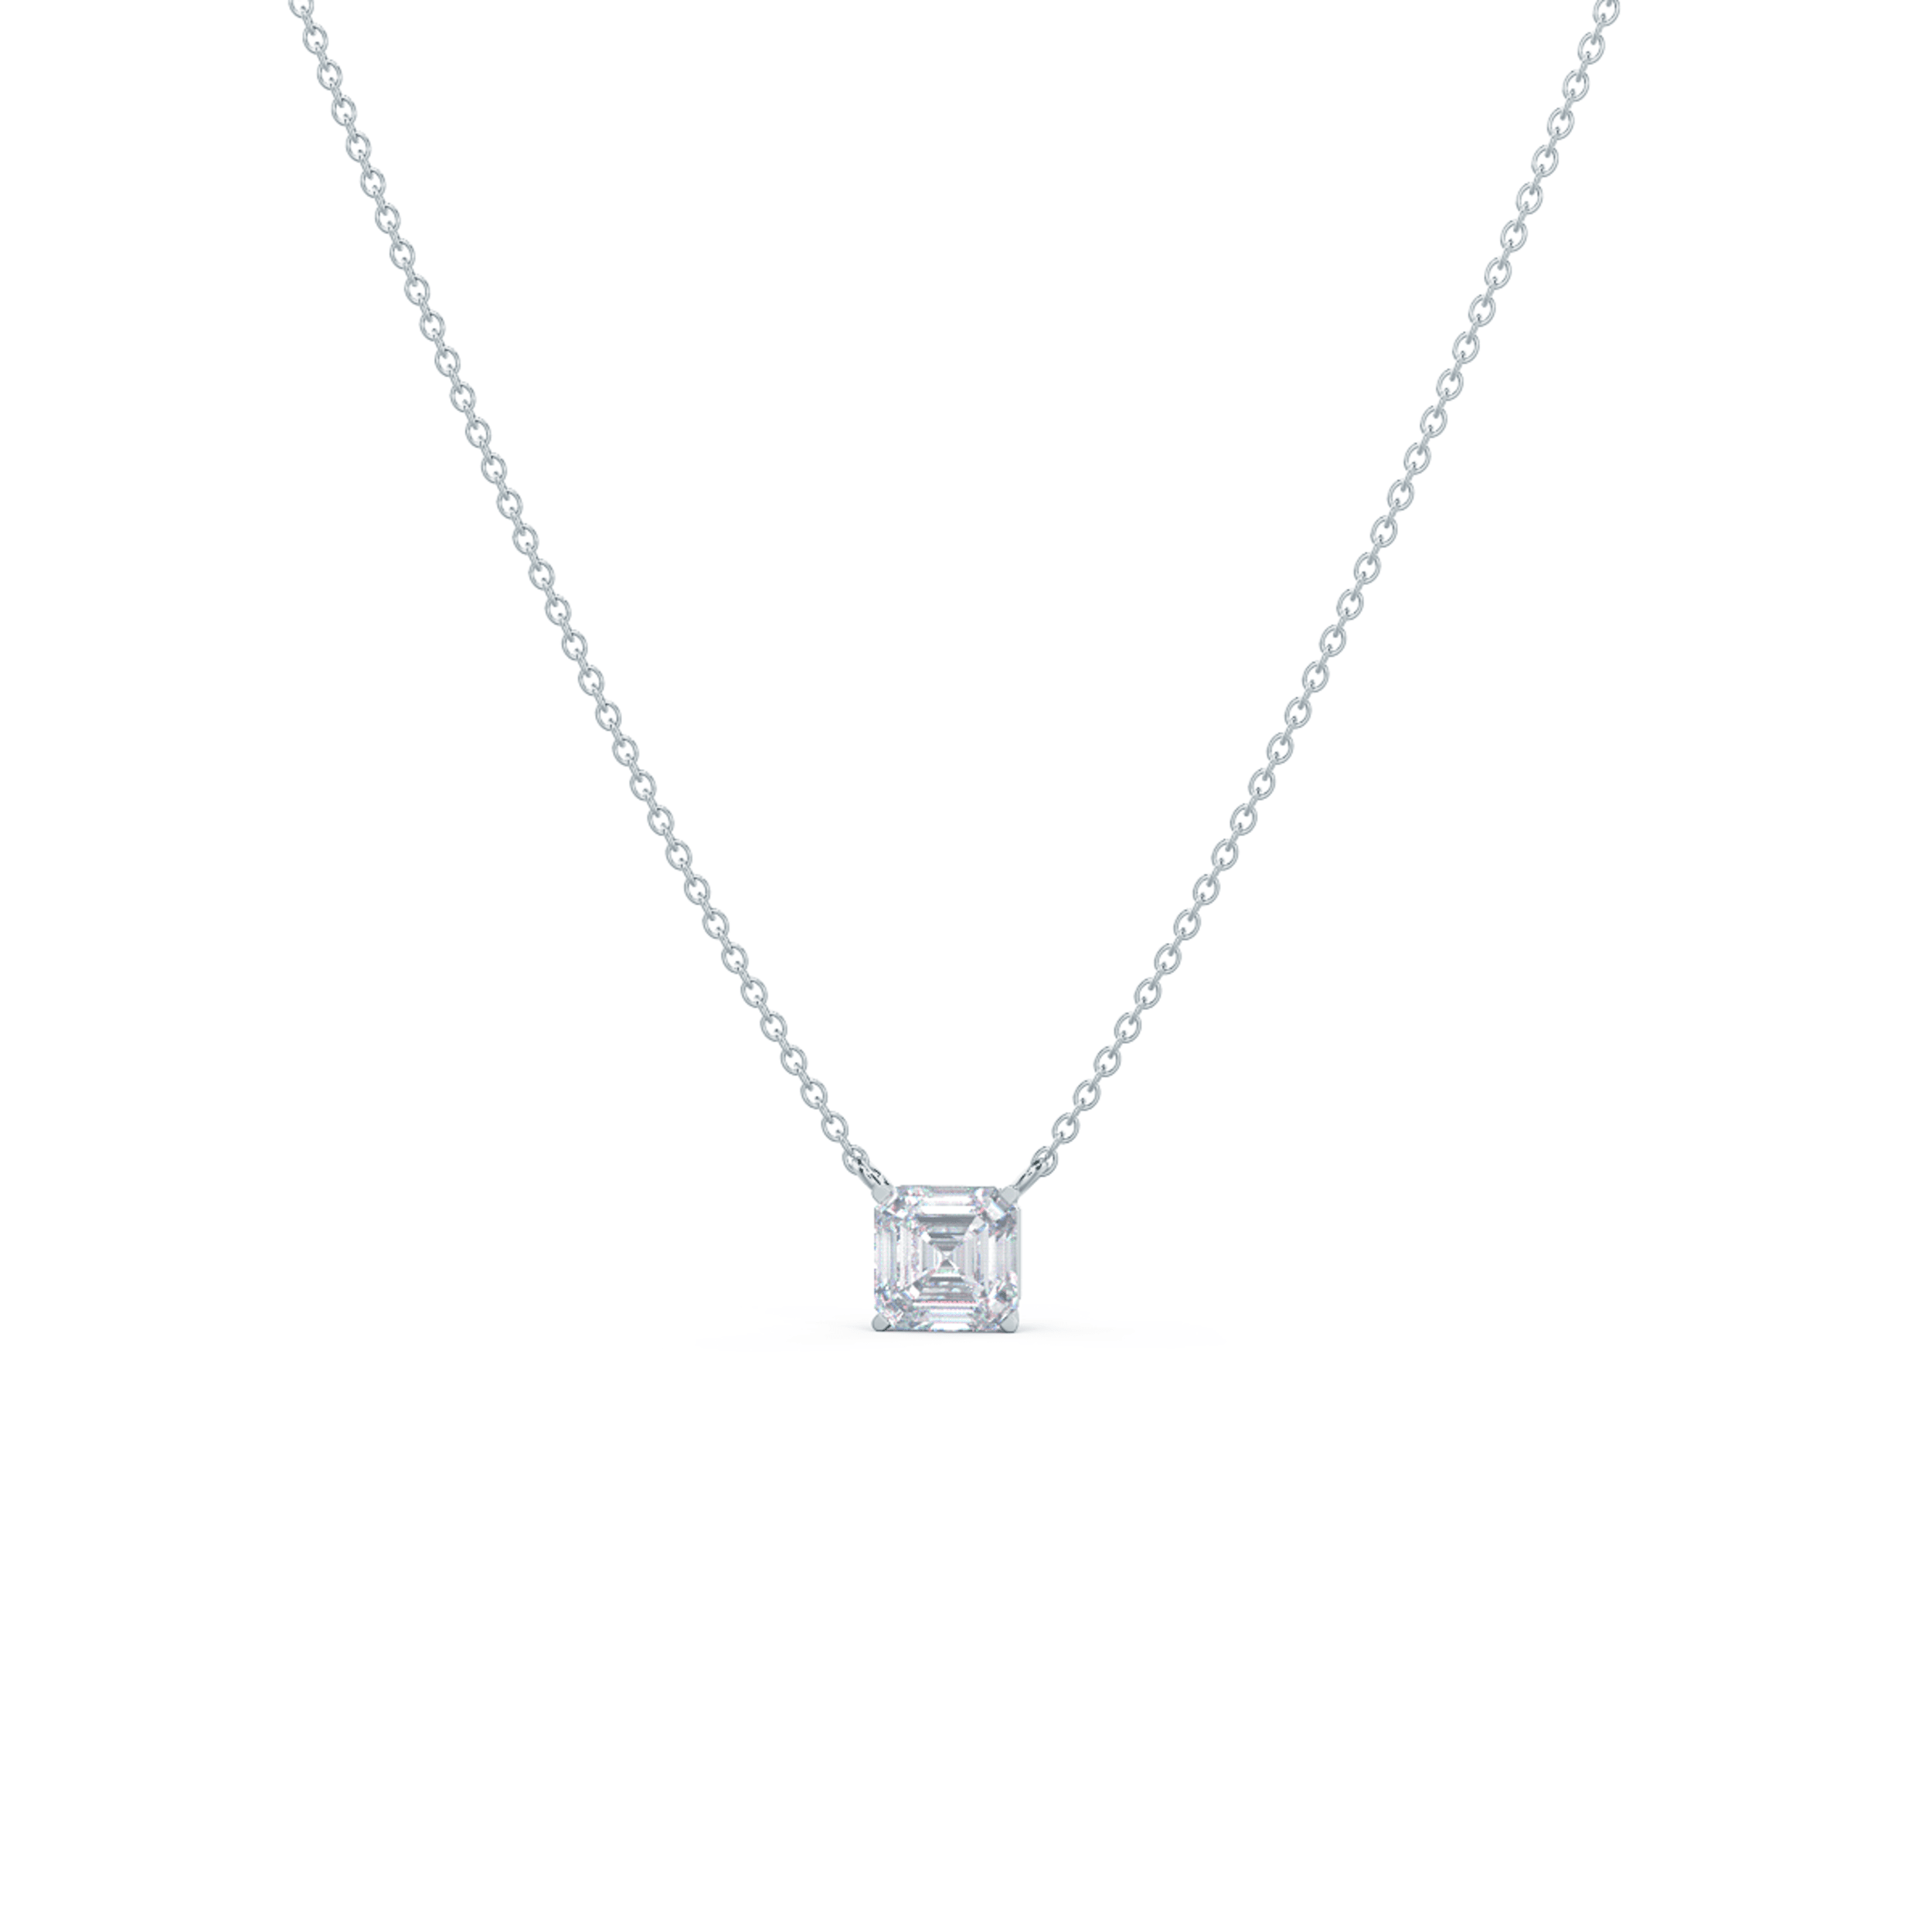 1.5ct asscher lab diamond necklace white background